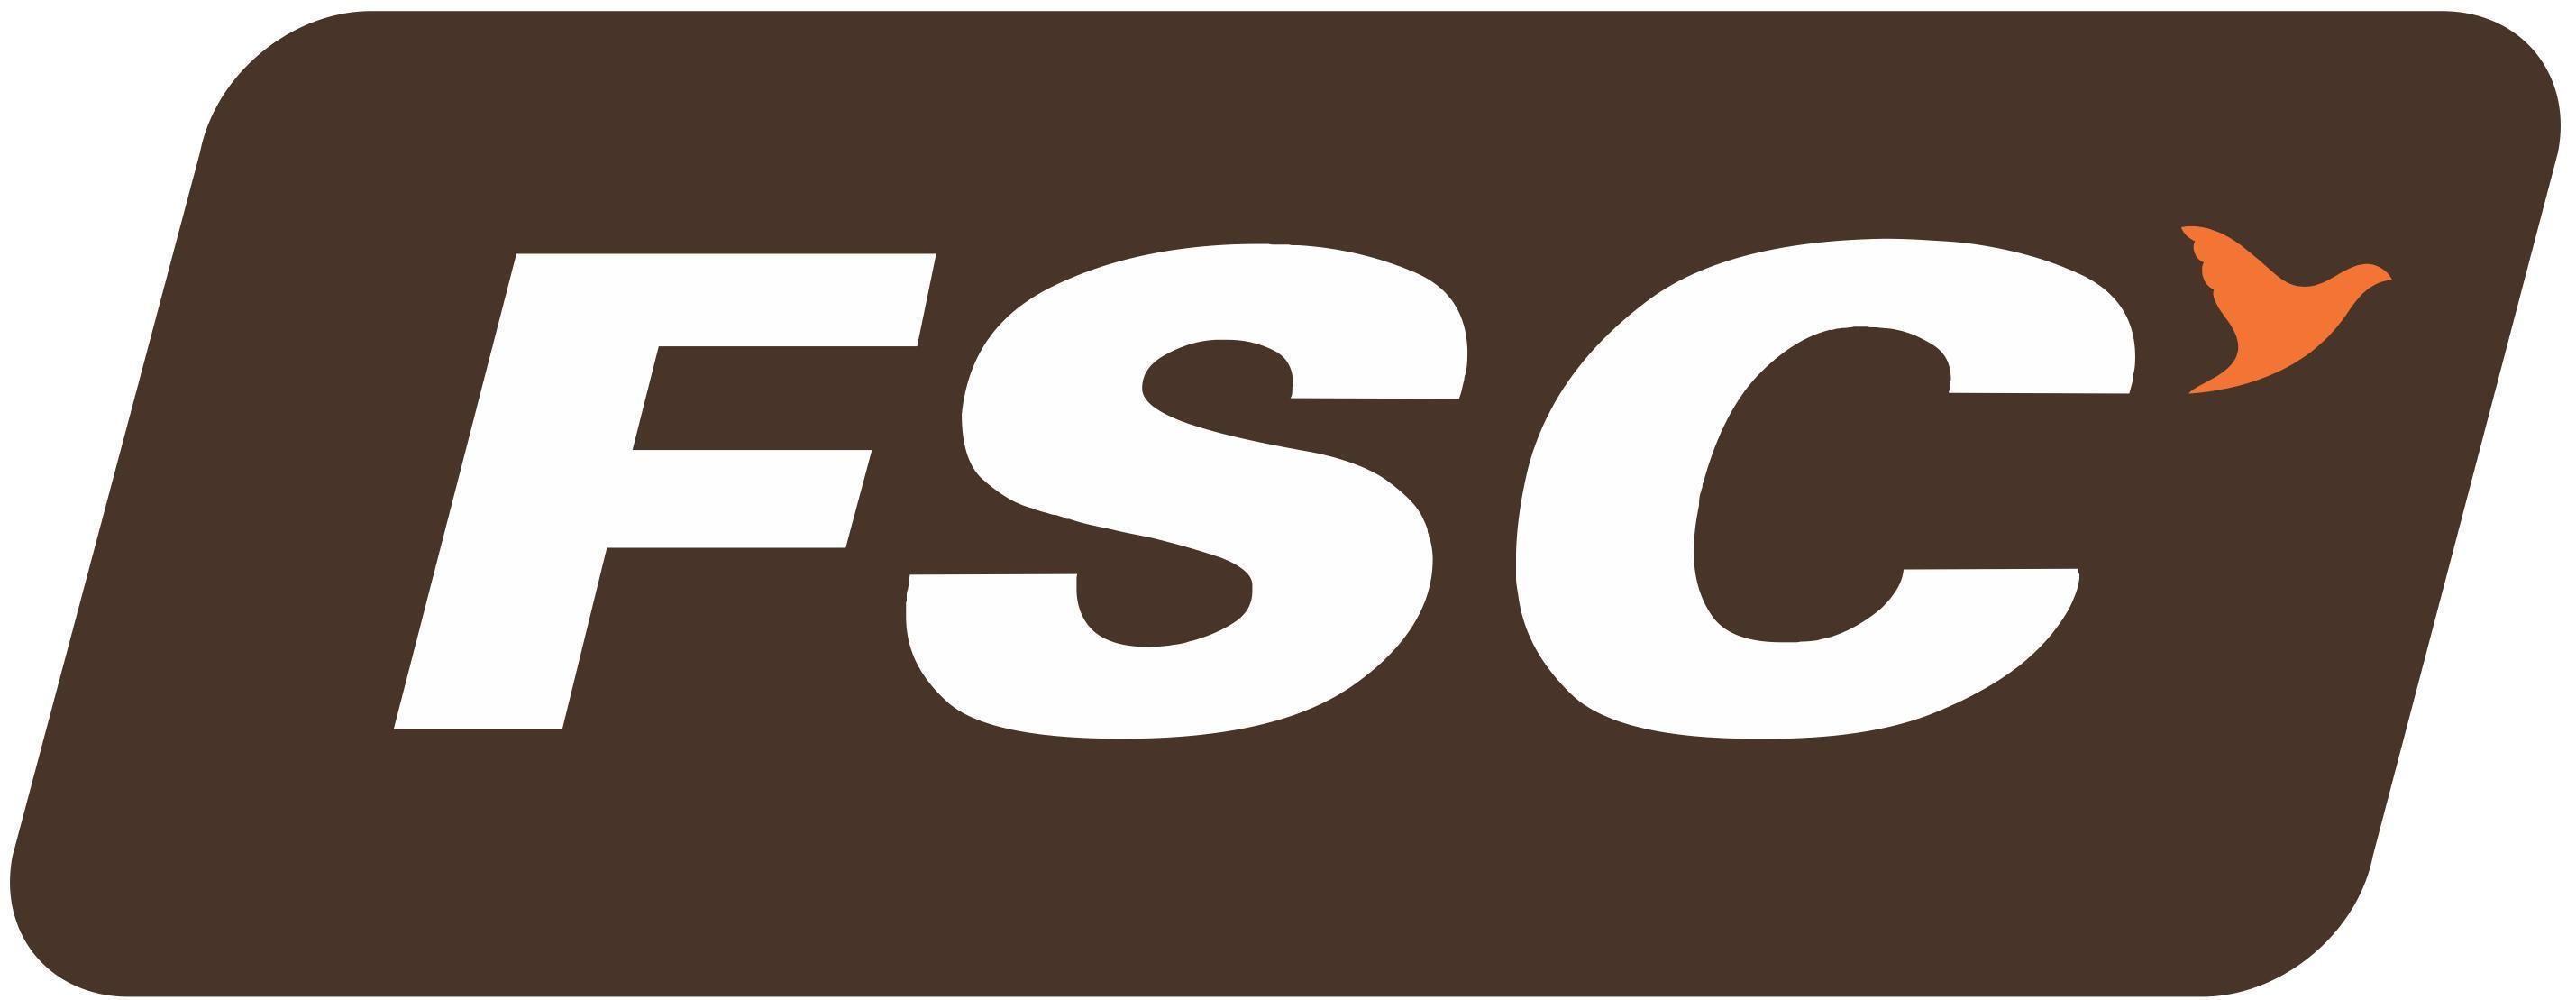 FSC Logo - FSC Competitors, Revenue and Employees Company Profile